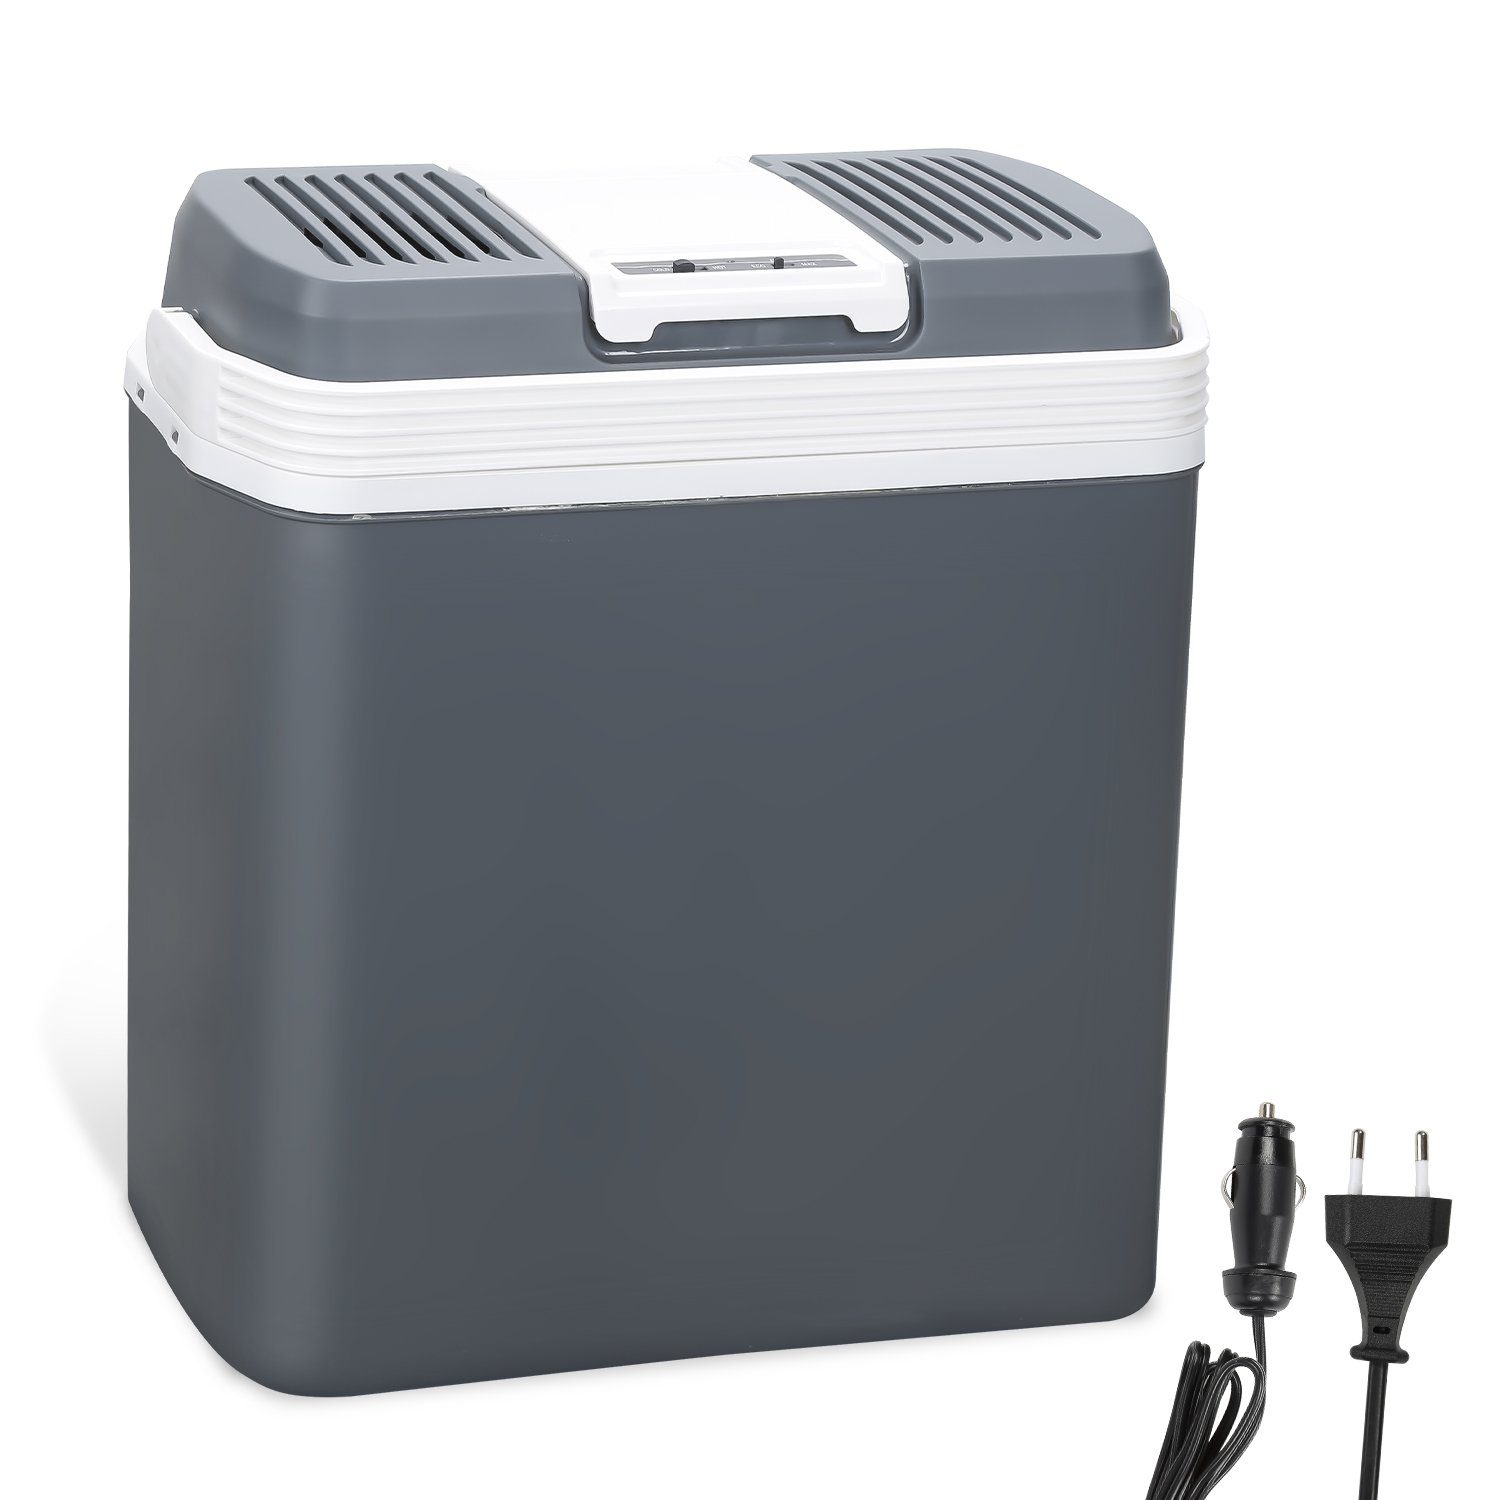 Clanmacy Outdoor-Flaschenkühler Kühlbox Elektrischer Kühler und Wärmer 24  Liter Kühlboxen mit Tragbarem Automatikgriff 230V AC und 12V DC Steckern  für